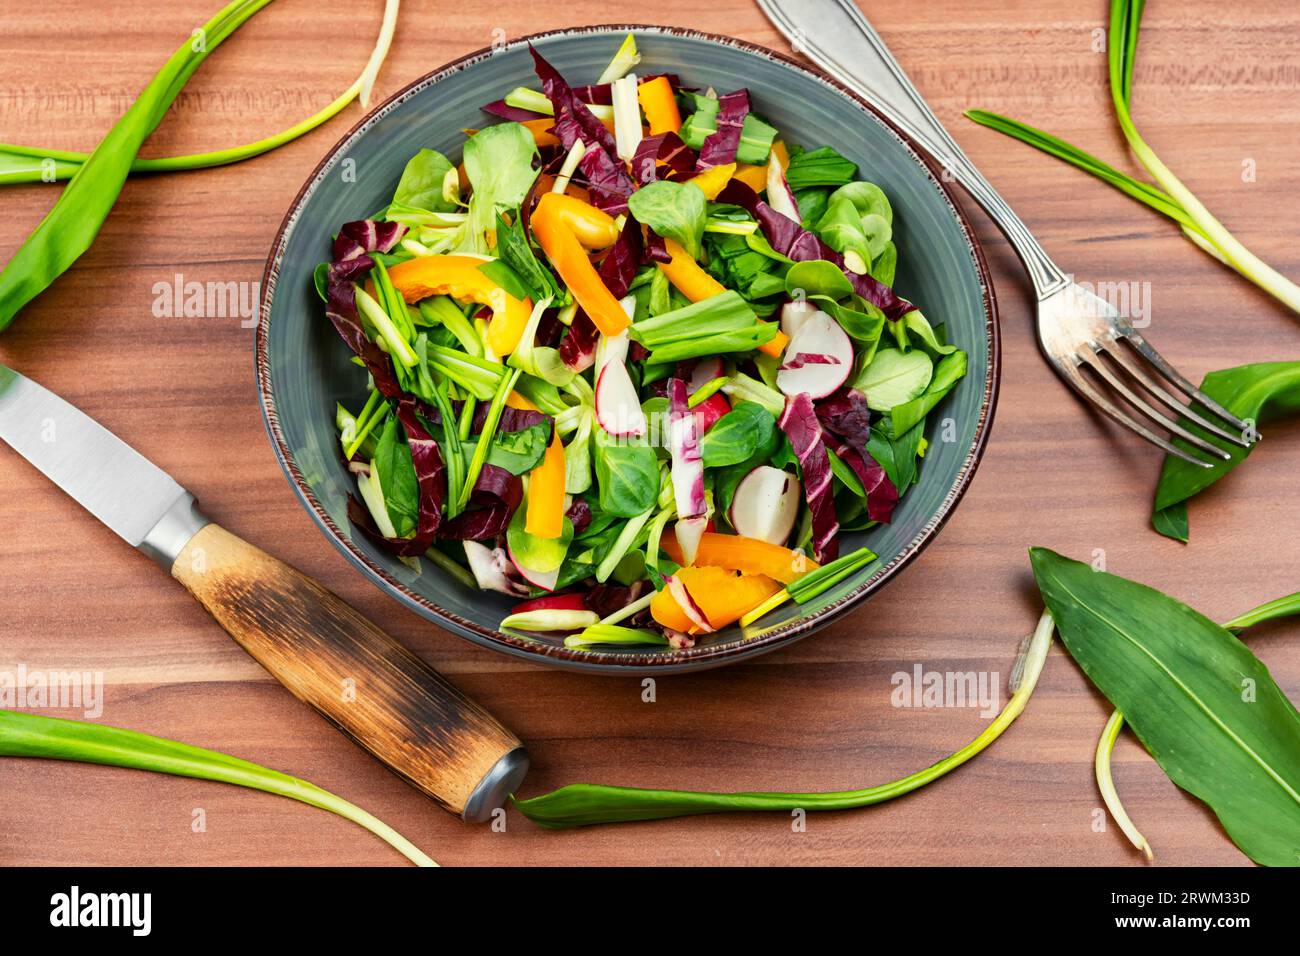 Salade verte avec légumes et poireaux ou ail sauvage. Alimentation saine des plantes de printemps Banque D'Images